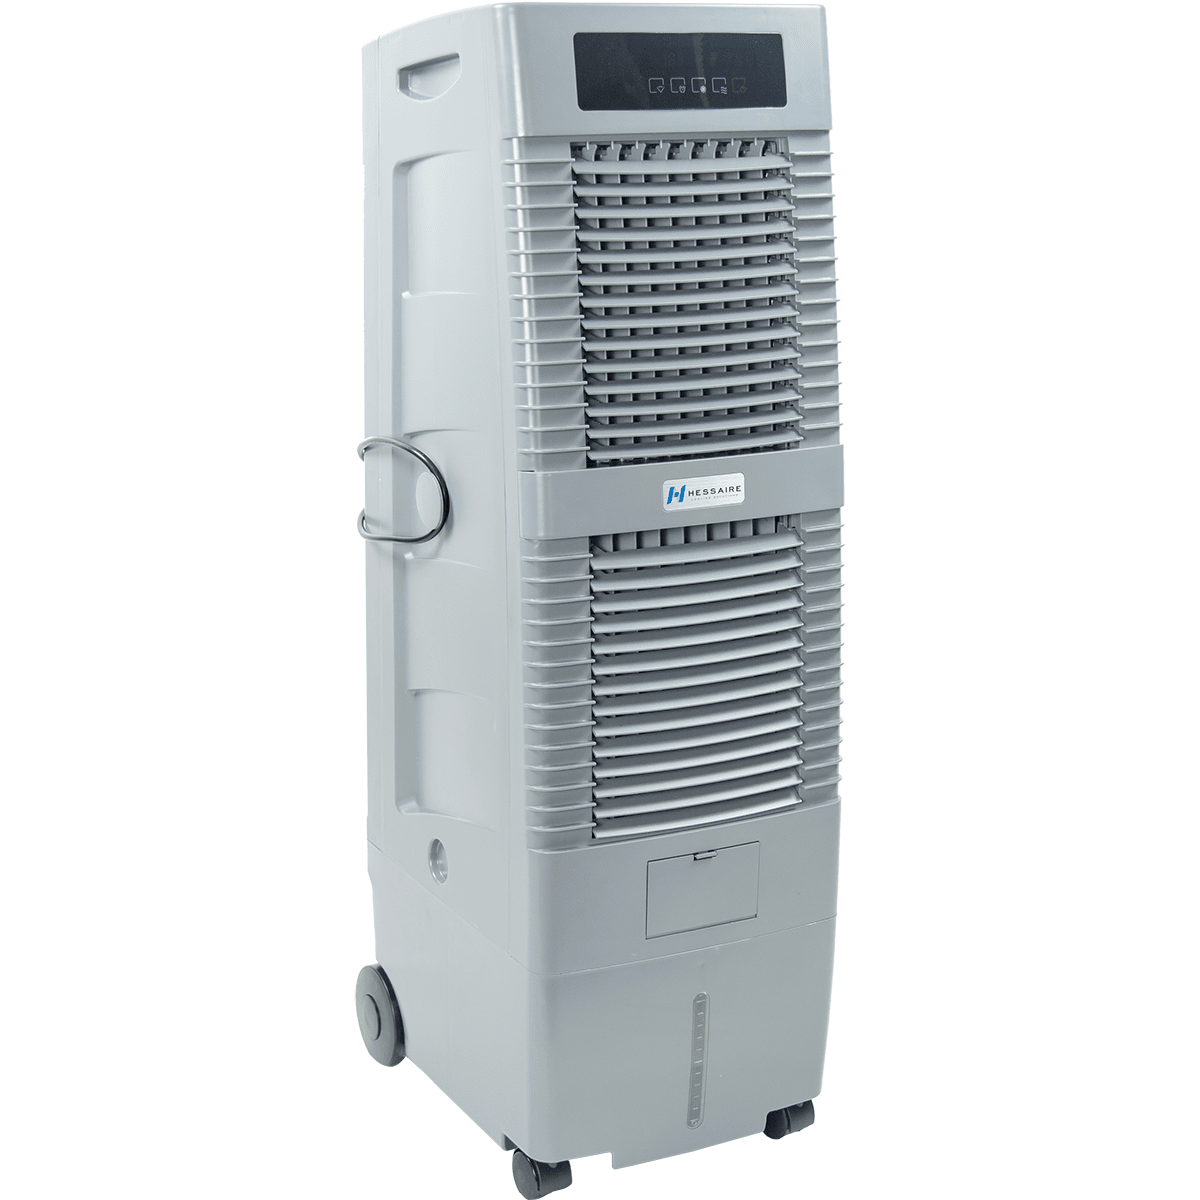 Hessaire Mc21a 1,100 Cfm Evaporative Cooler